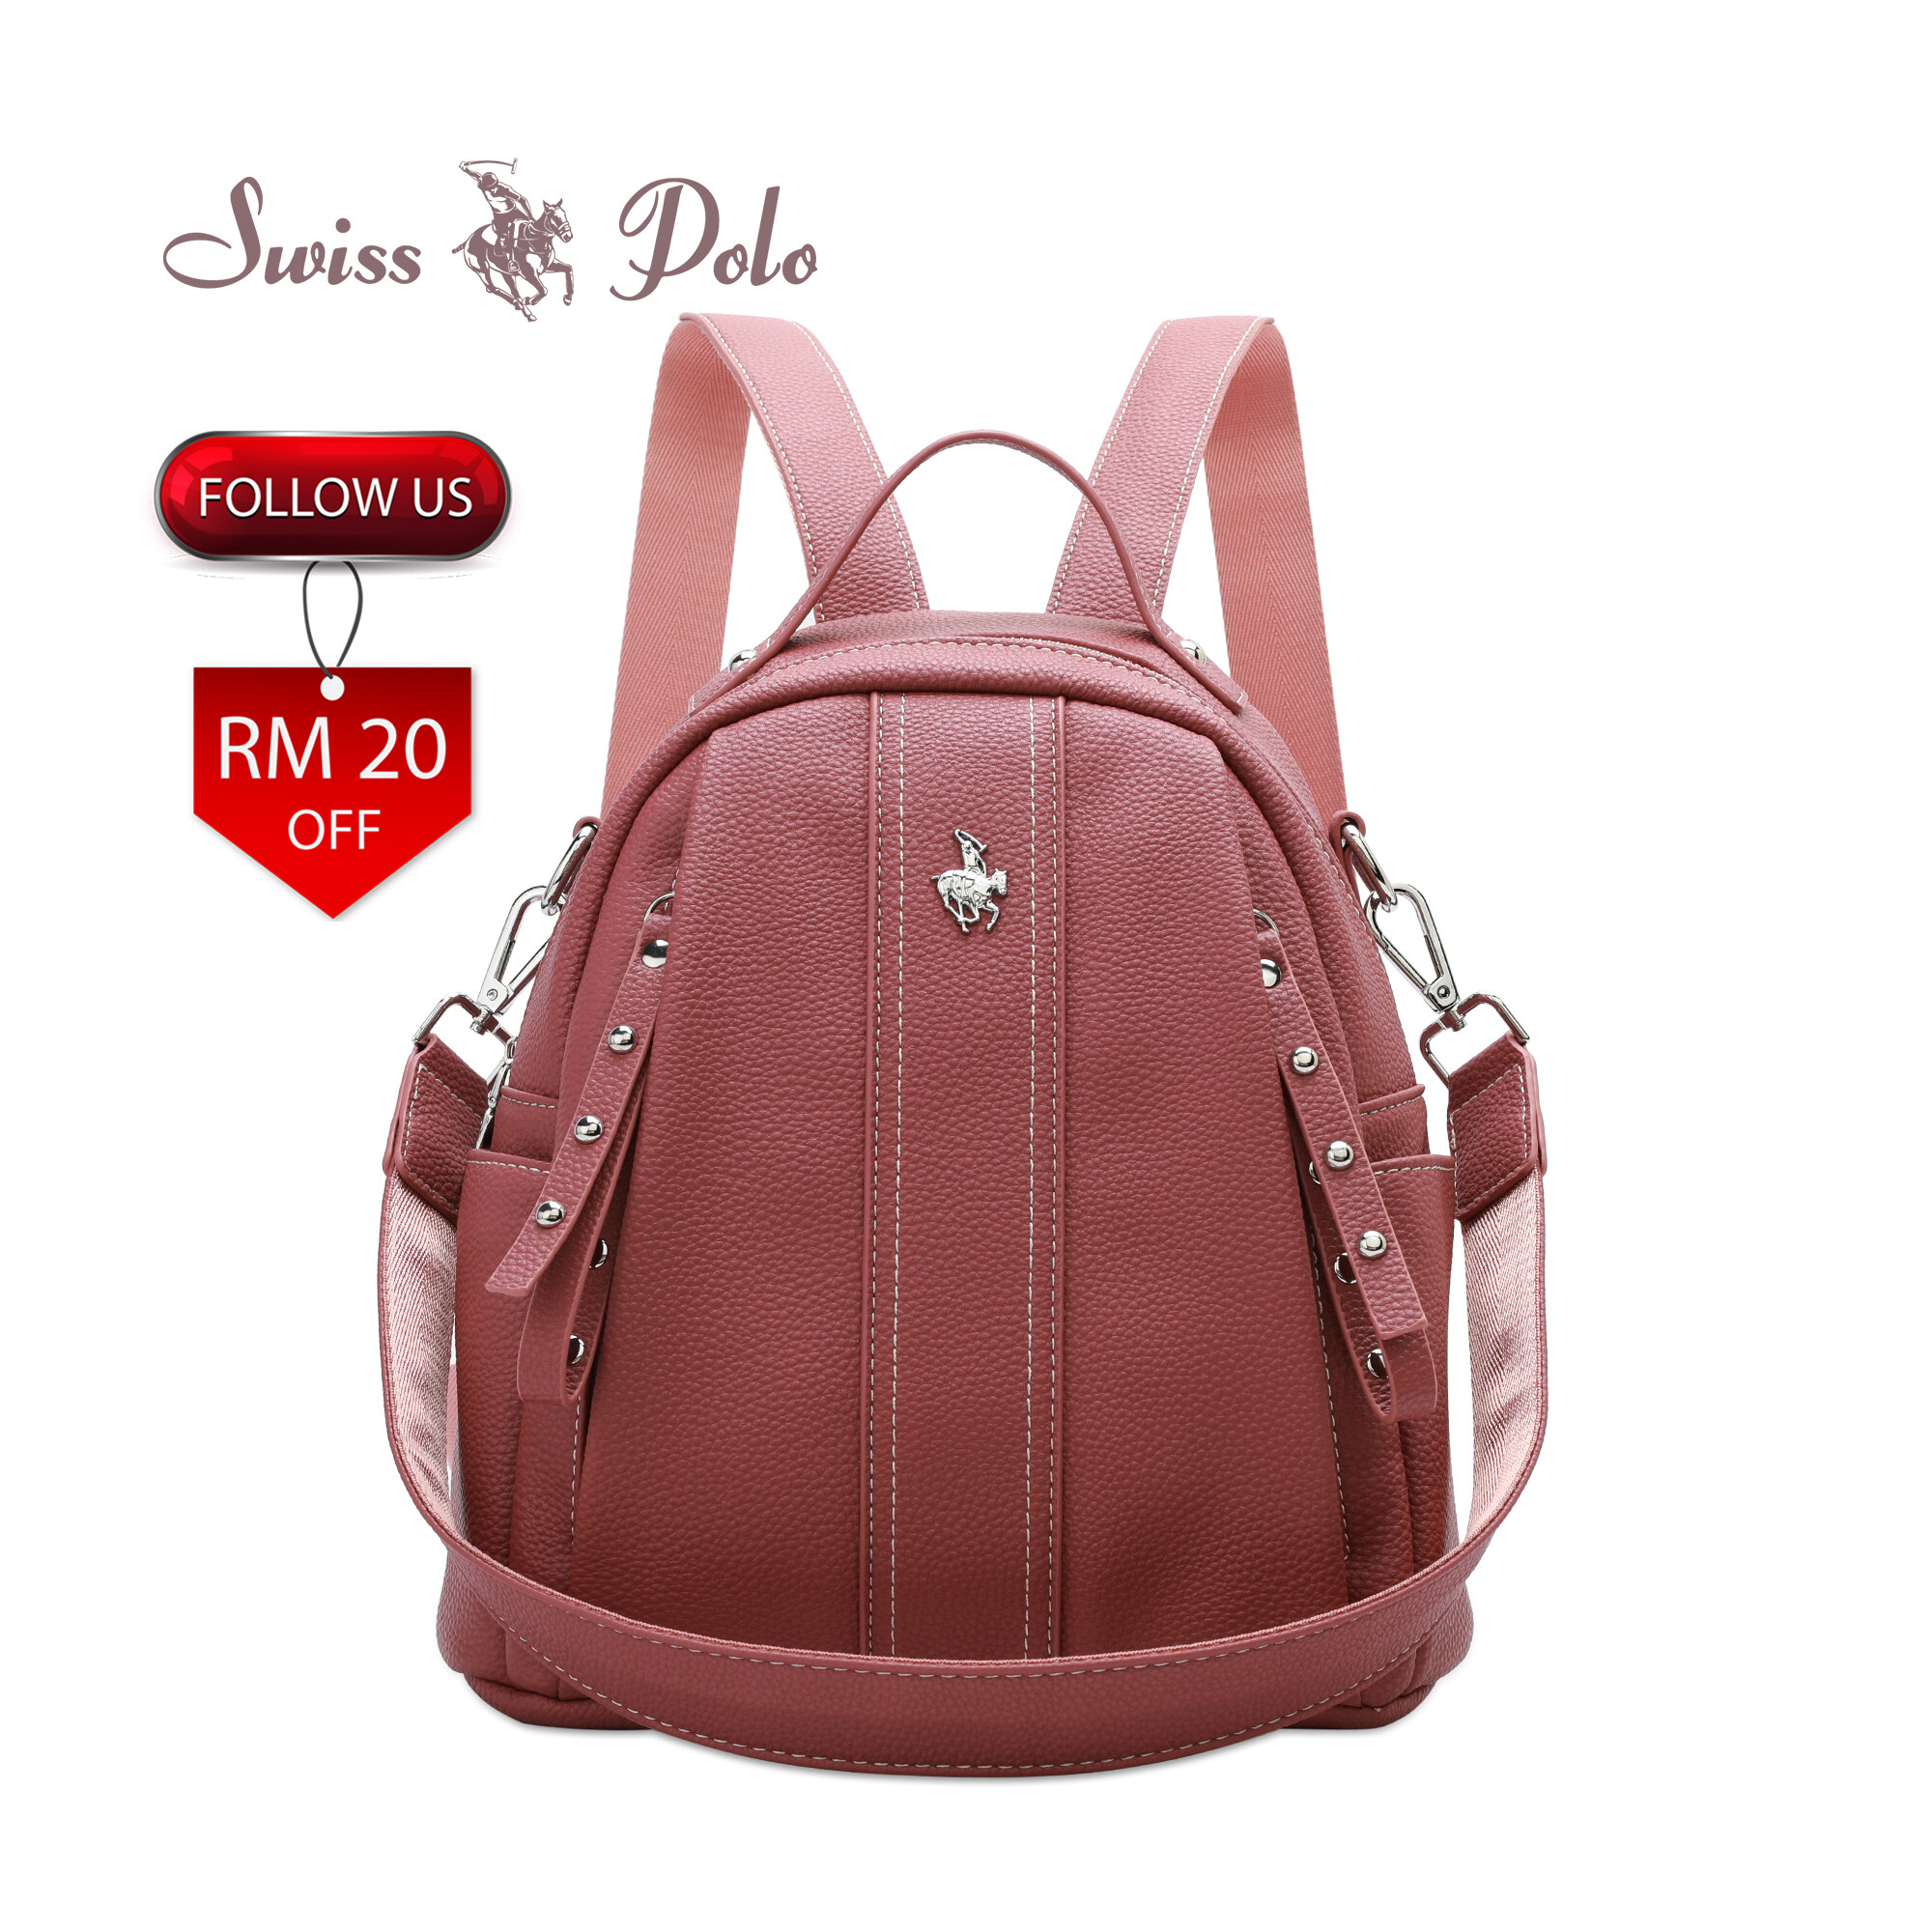 SWISS POLO Ladies Backpack HEM 7573-3 PINK